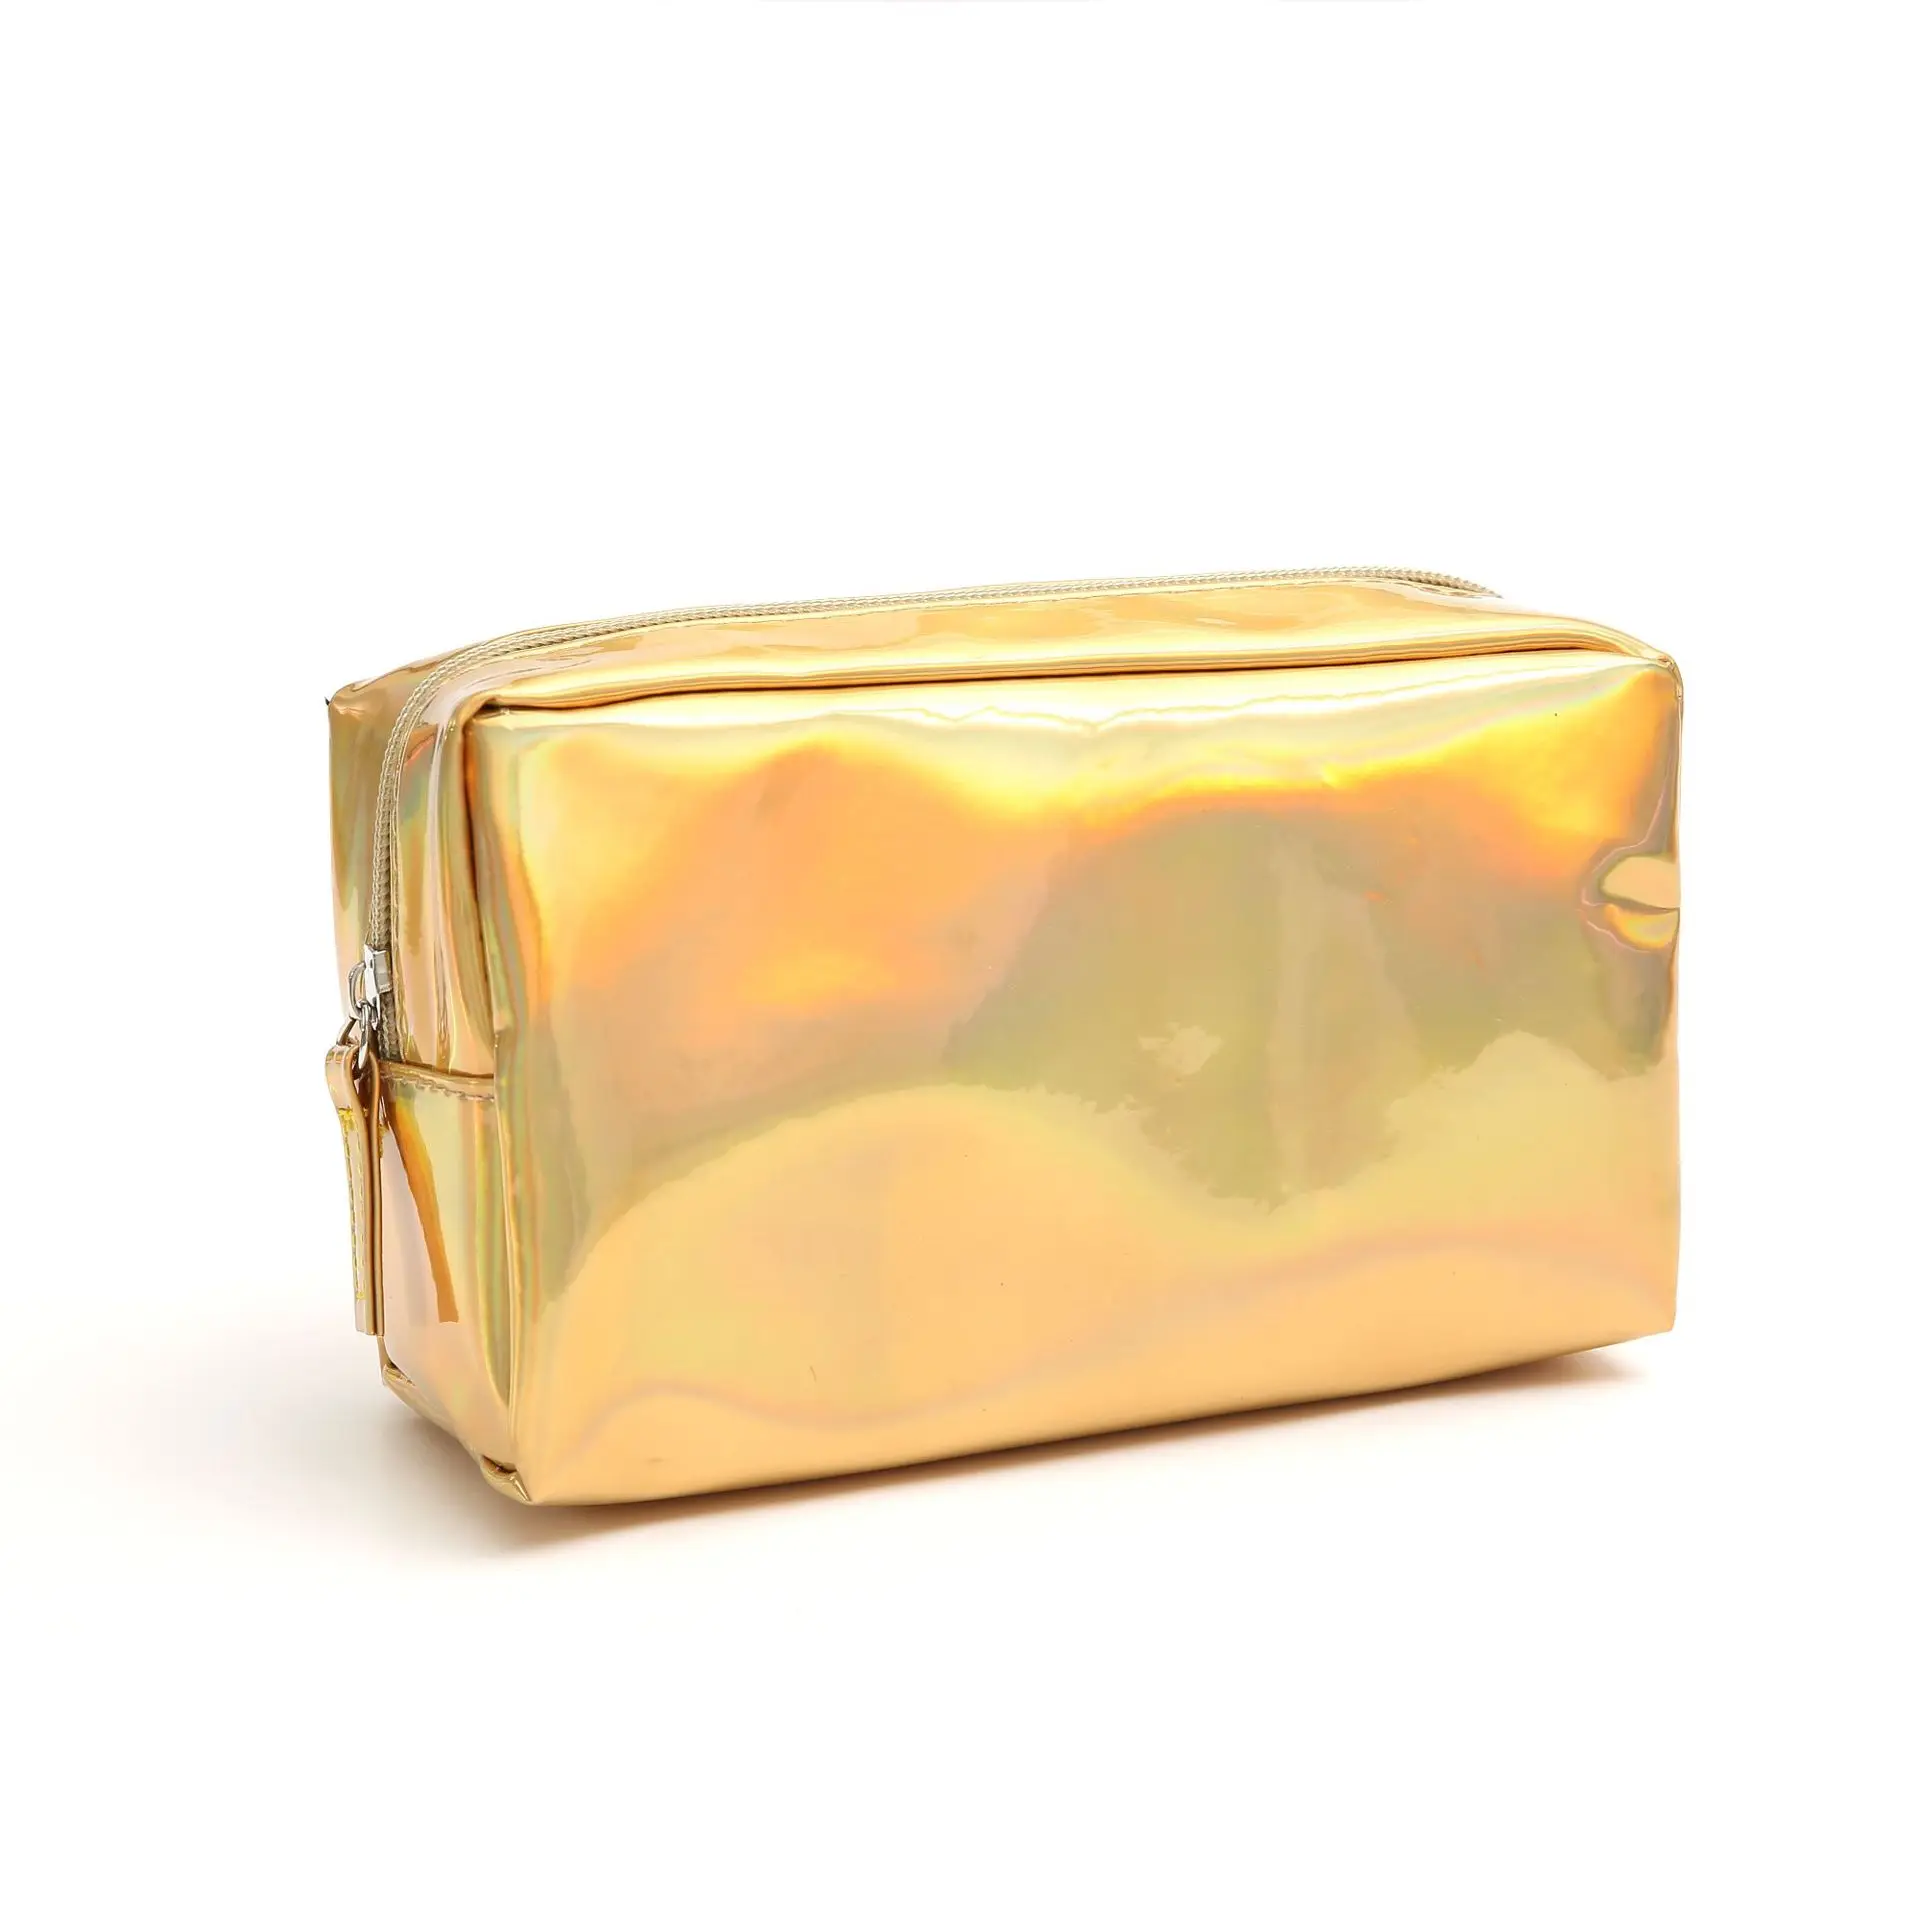 Женская модная Лазерная косметичка, модный голографический чехол-карандаш, косметичка для макияжа, сумочка на молнии, сумочка, косметичка, чехол s - Color: gold